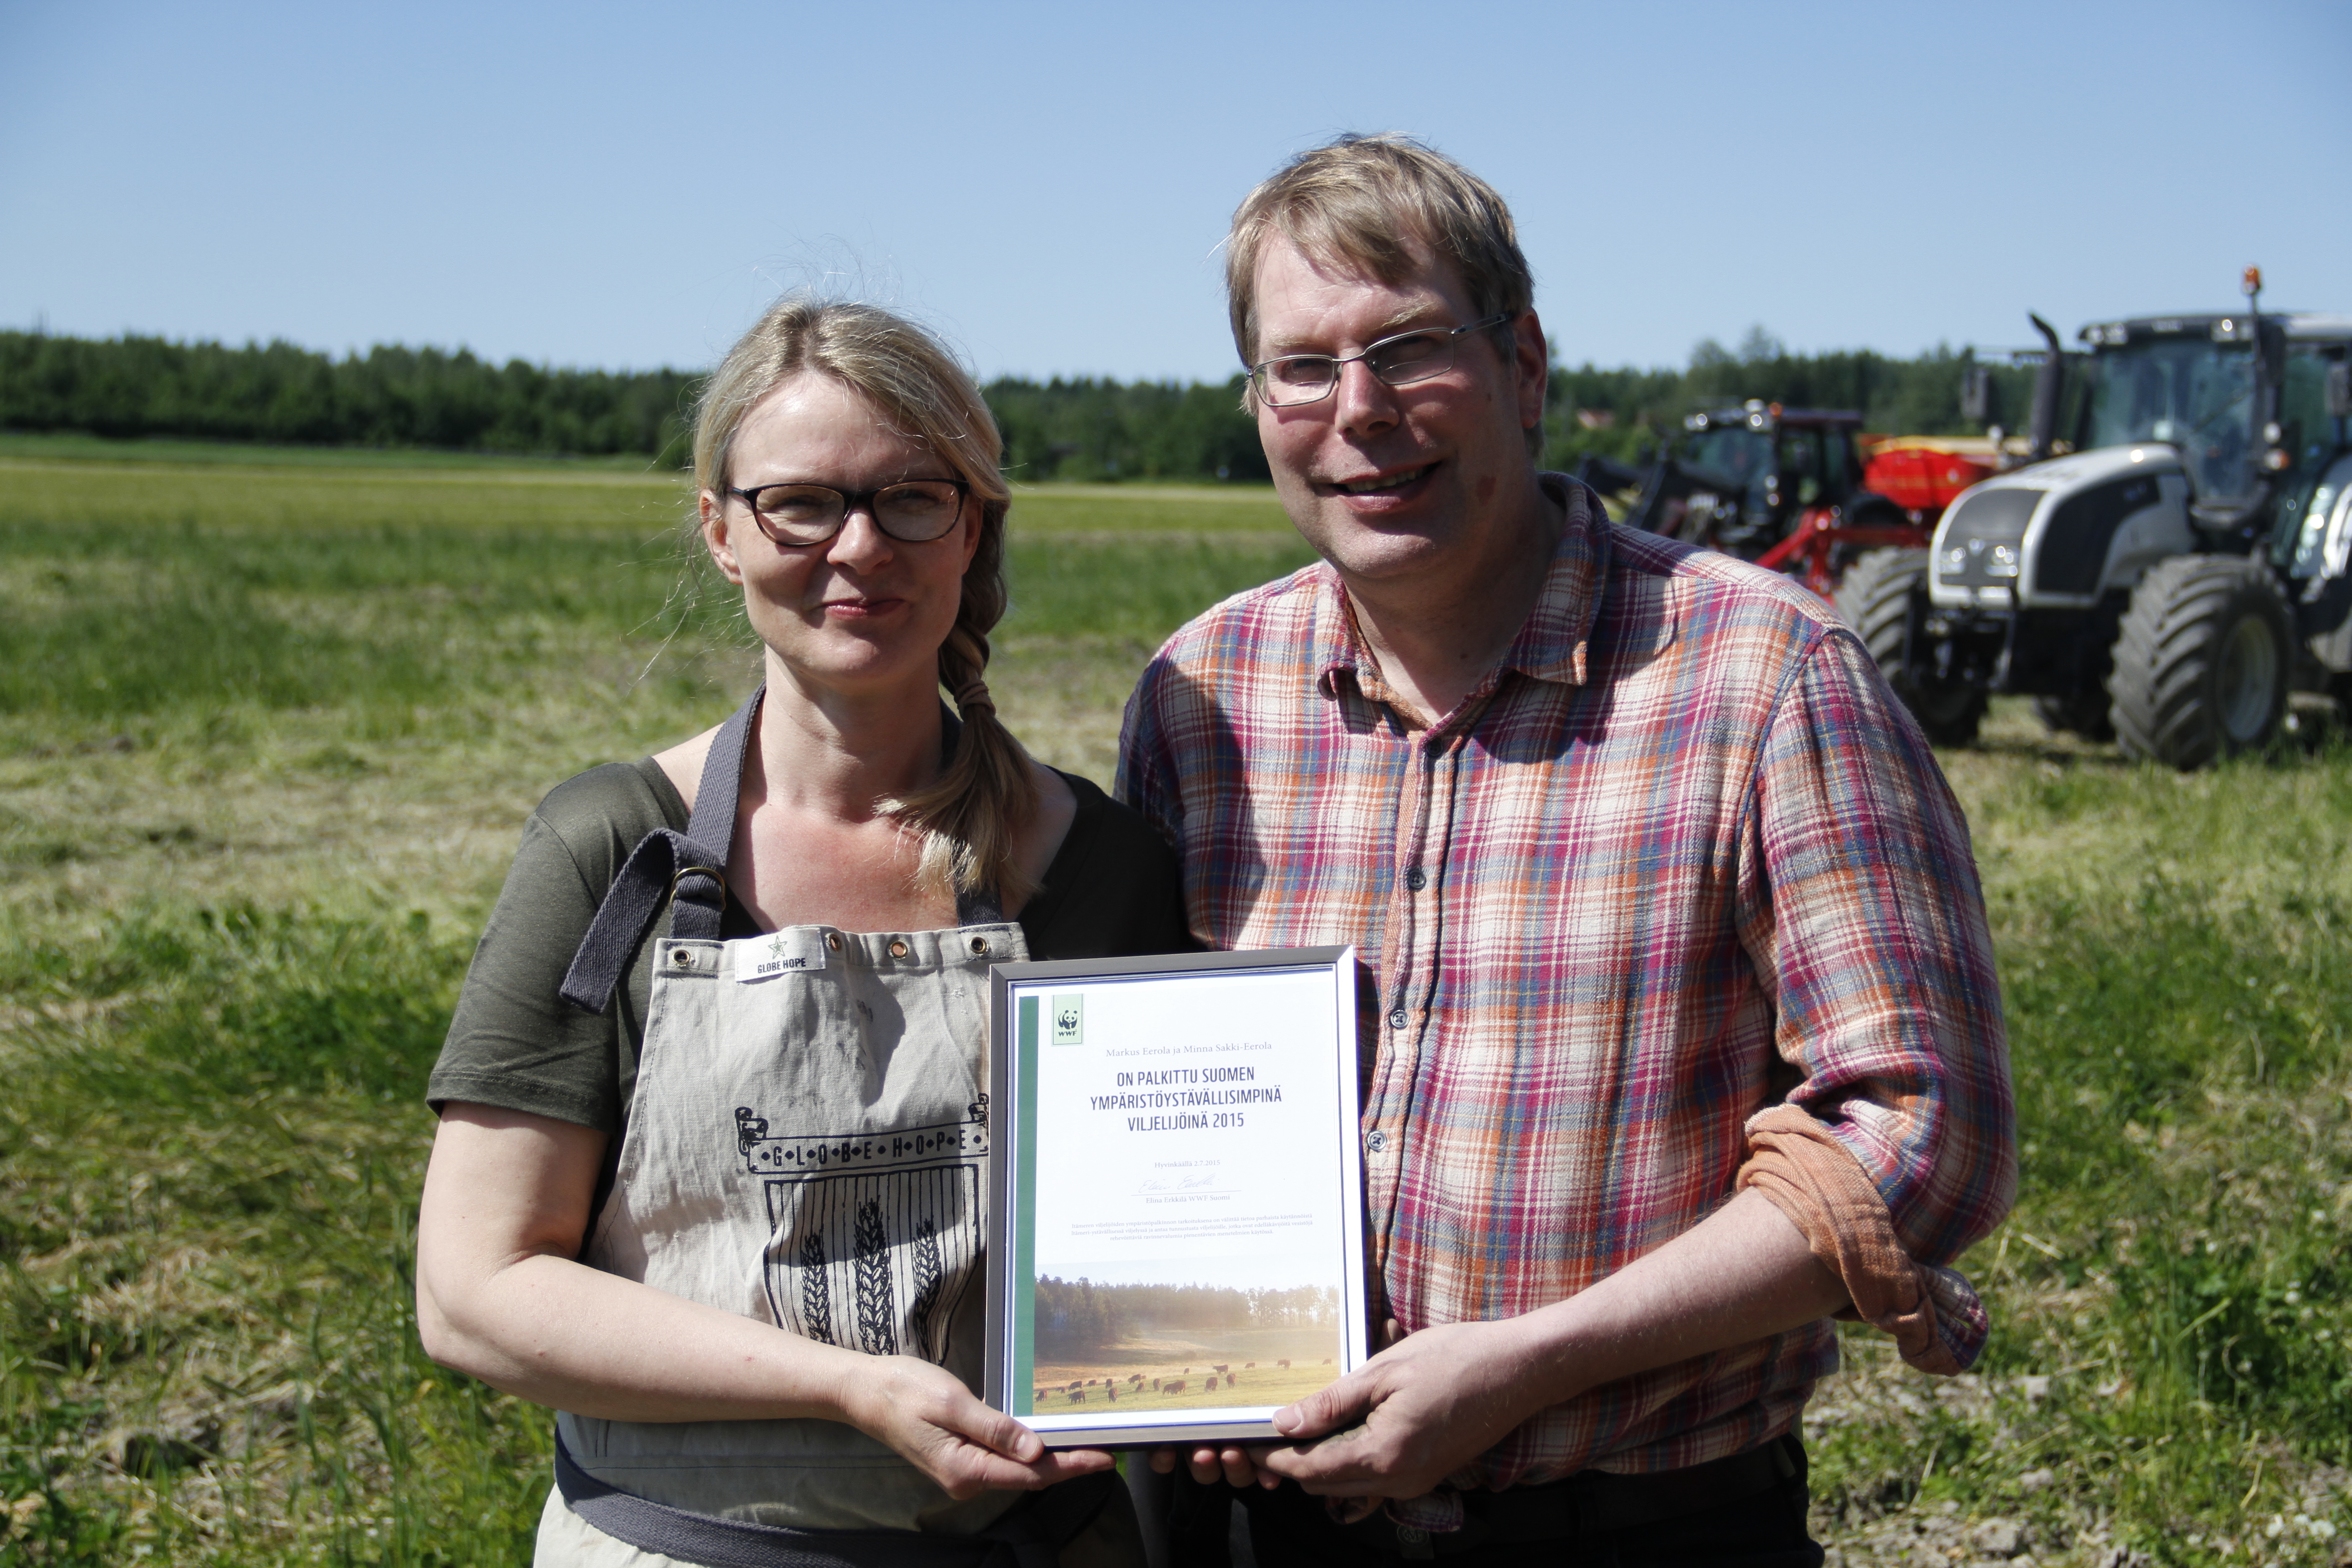 Selle aasta Läänemere-sõbraliku põllumajandustootja tiitel läks Soome